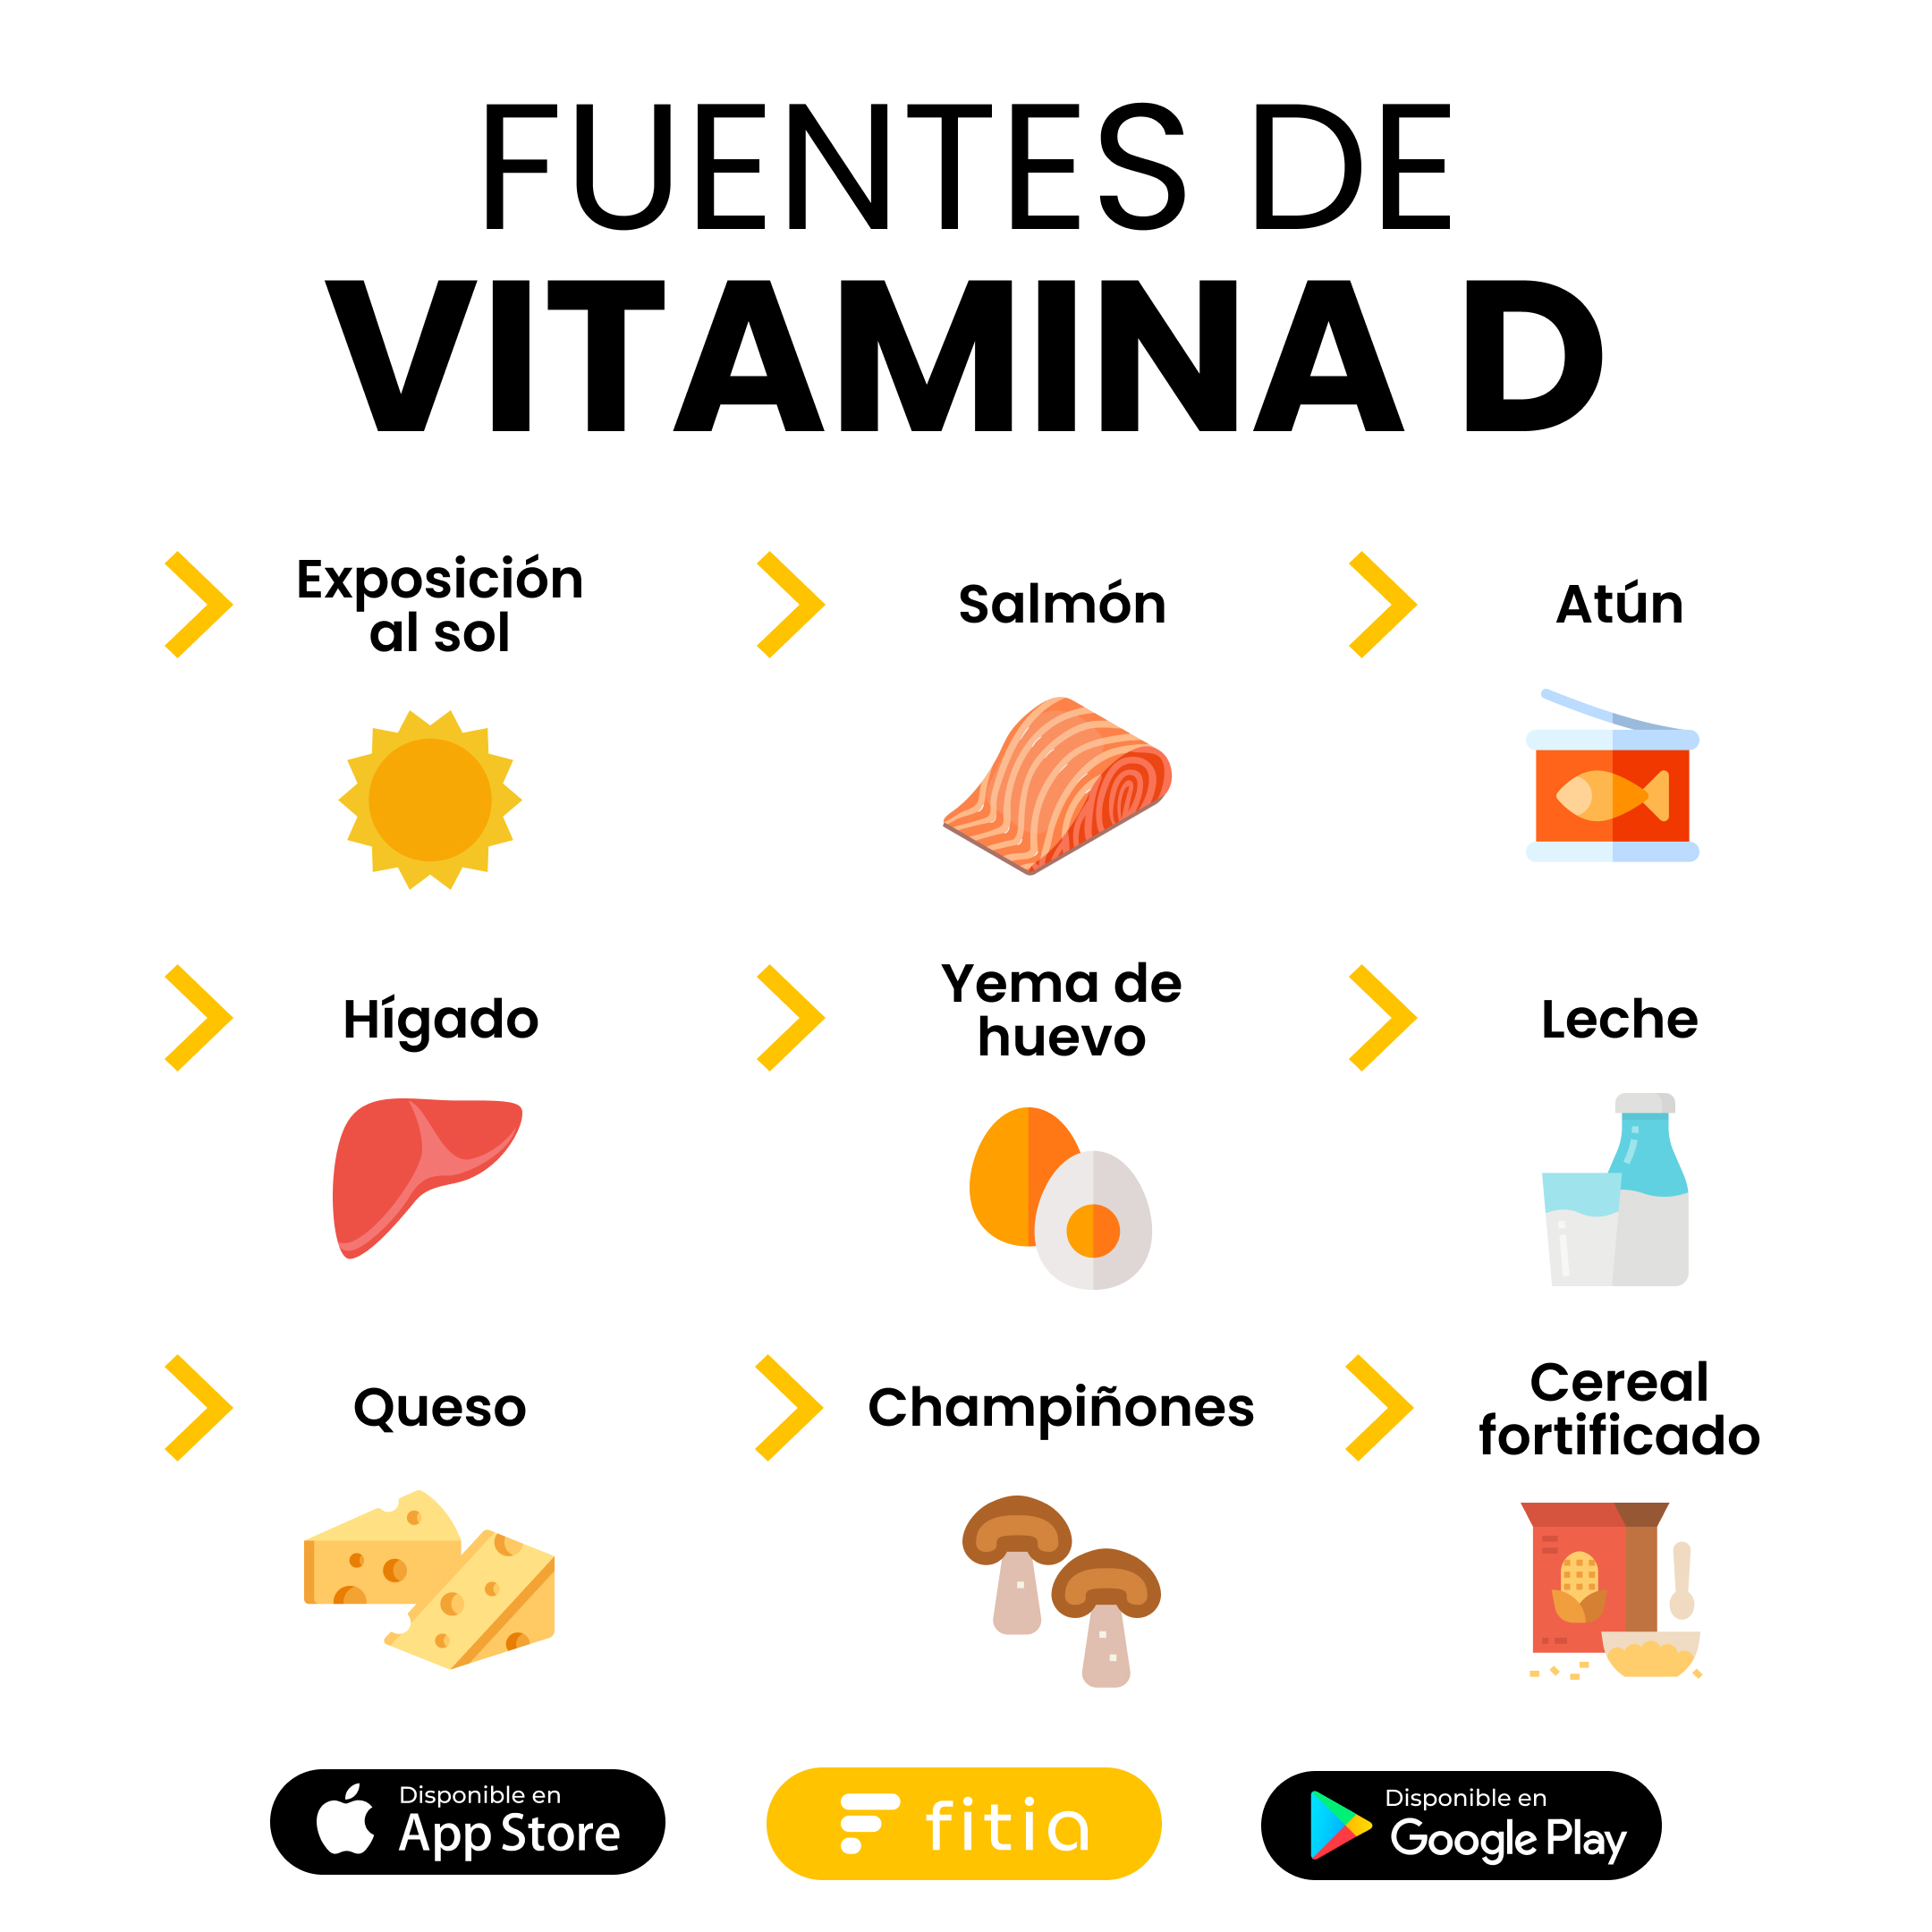 Fuentes de Vitamina D.jpg